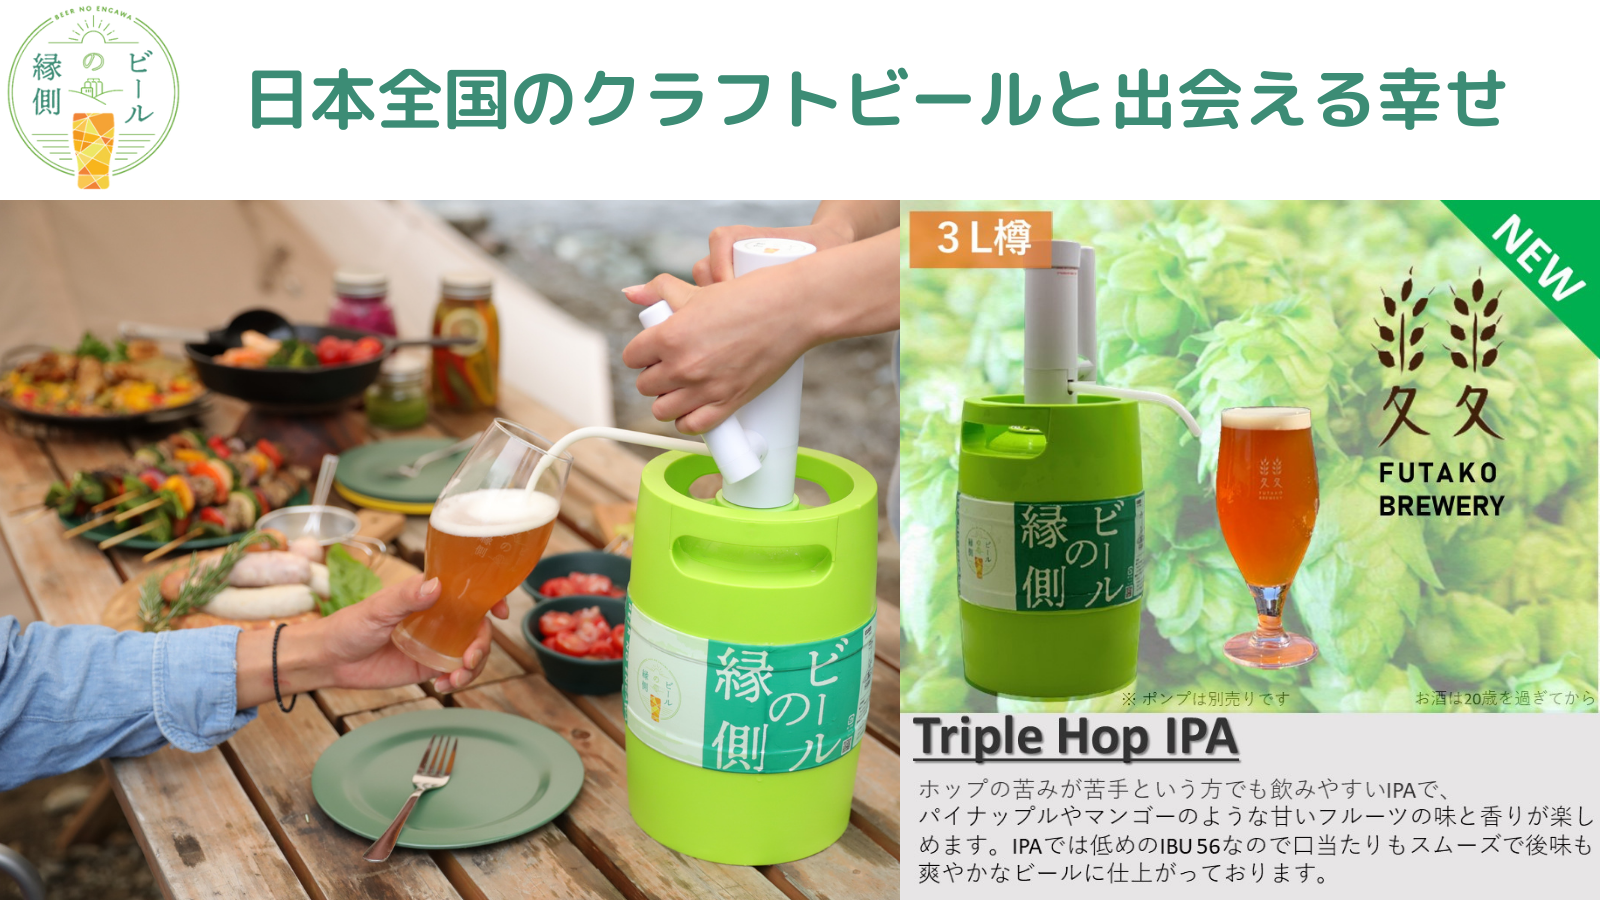 東京都世田谷区に所在する、ふたこビール醸造所（株式会社ふたこ麦麦公社）が日本全国のクラフトビールをポータブルホームサーバーで楽しめる『ビールの縁側』にて新商品の販売を開始